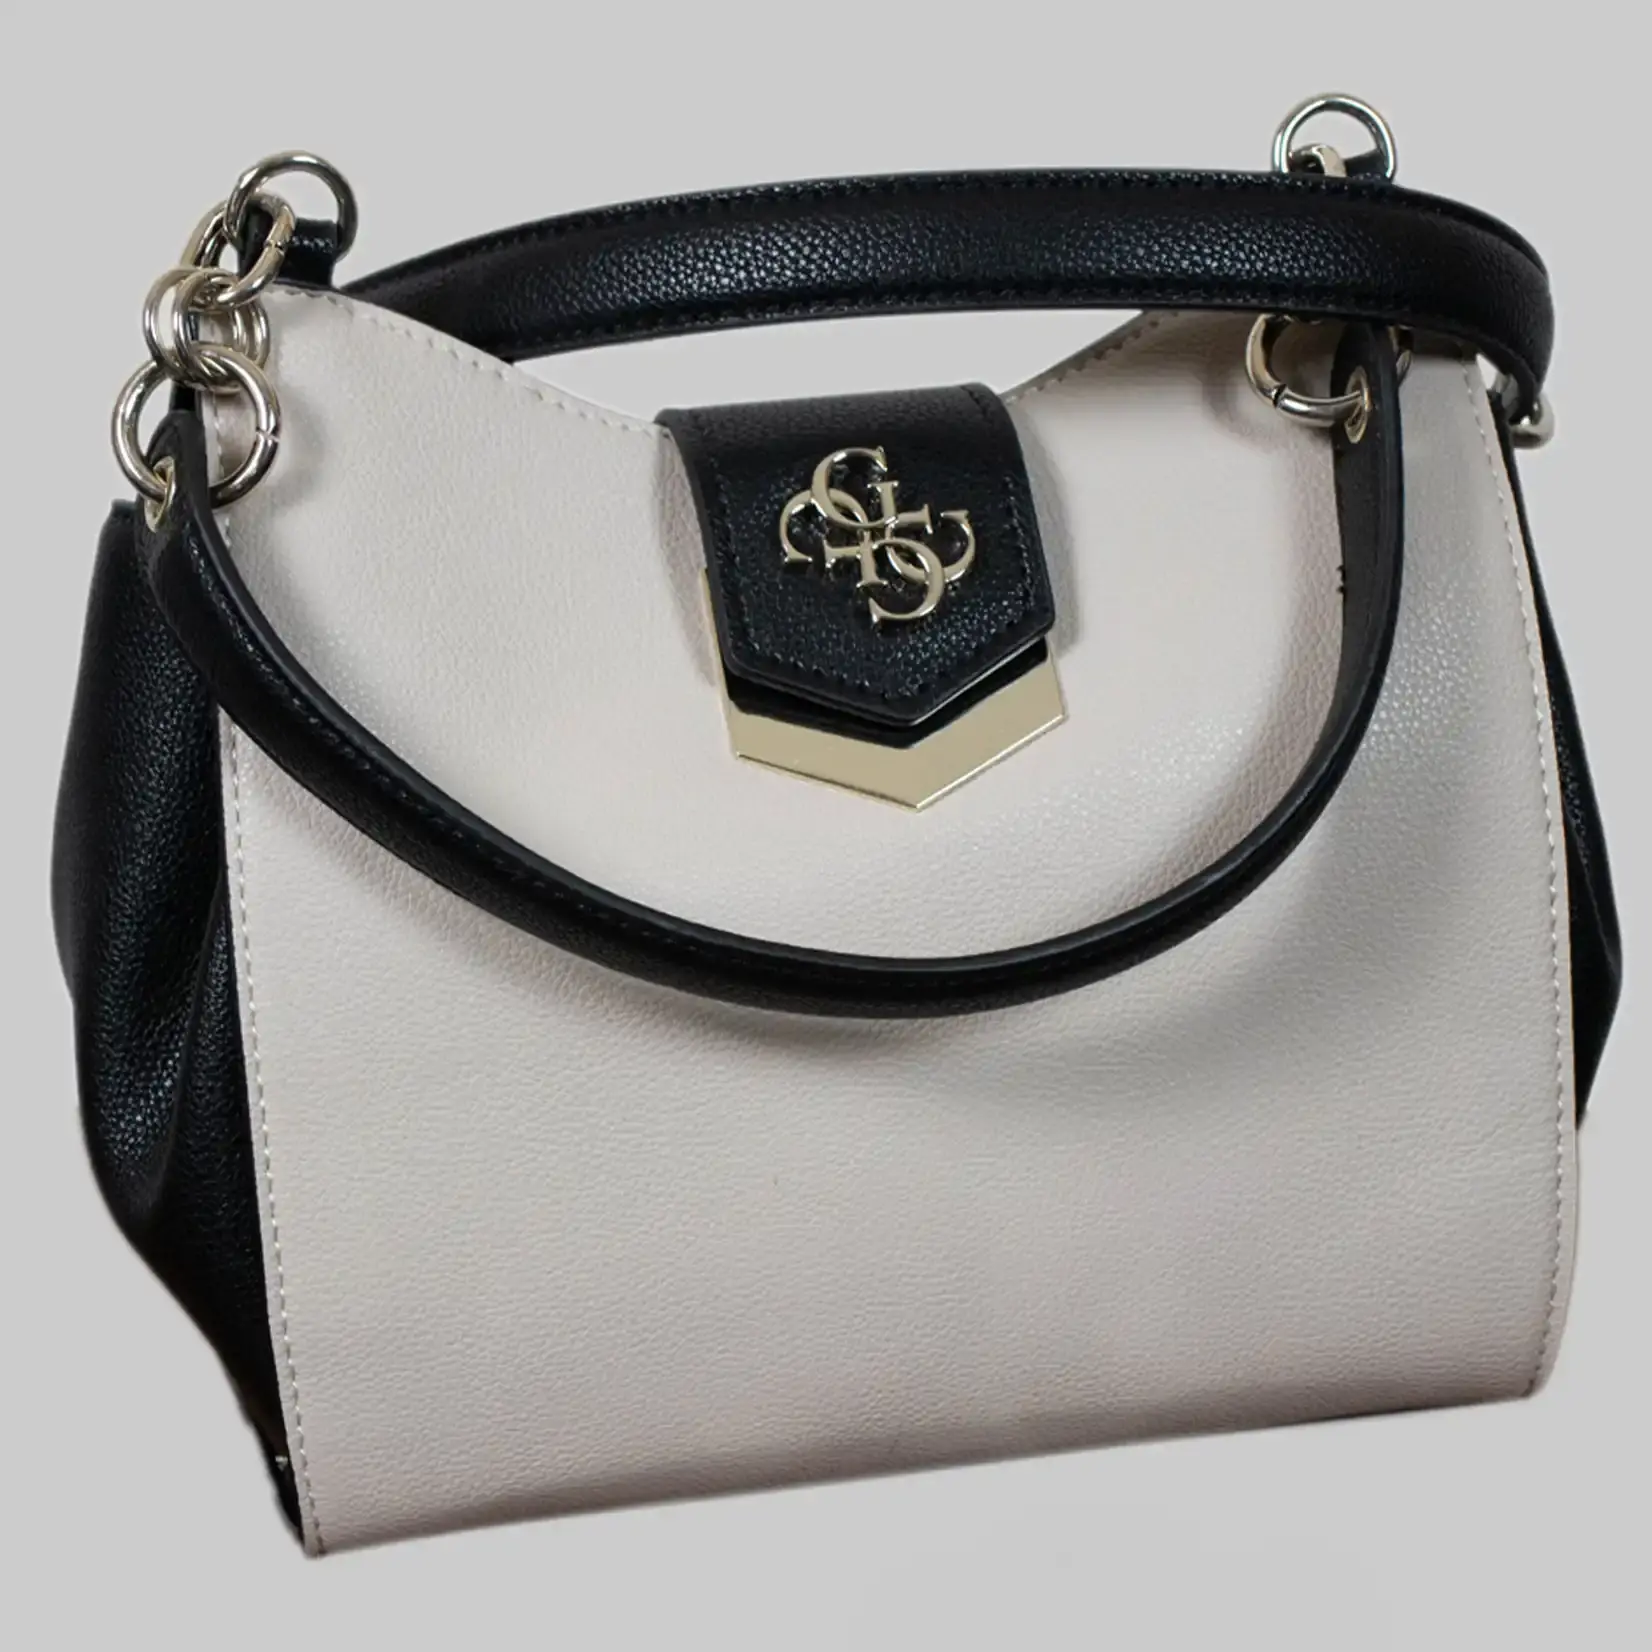 Guess Handtasche Damen Kunstleder - Schwarz Grau - Großes Guess Logo, Guess Anhänger, Dust Bag - Magnetverschluss